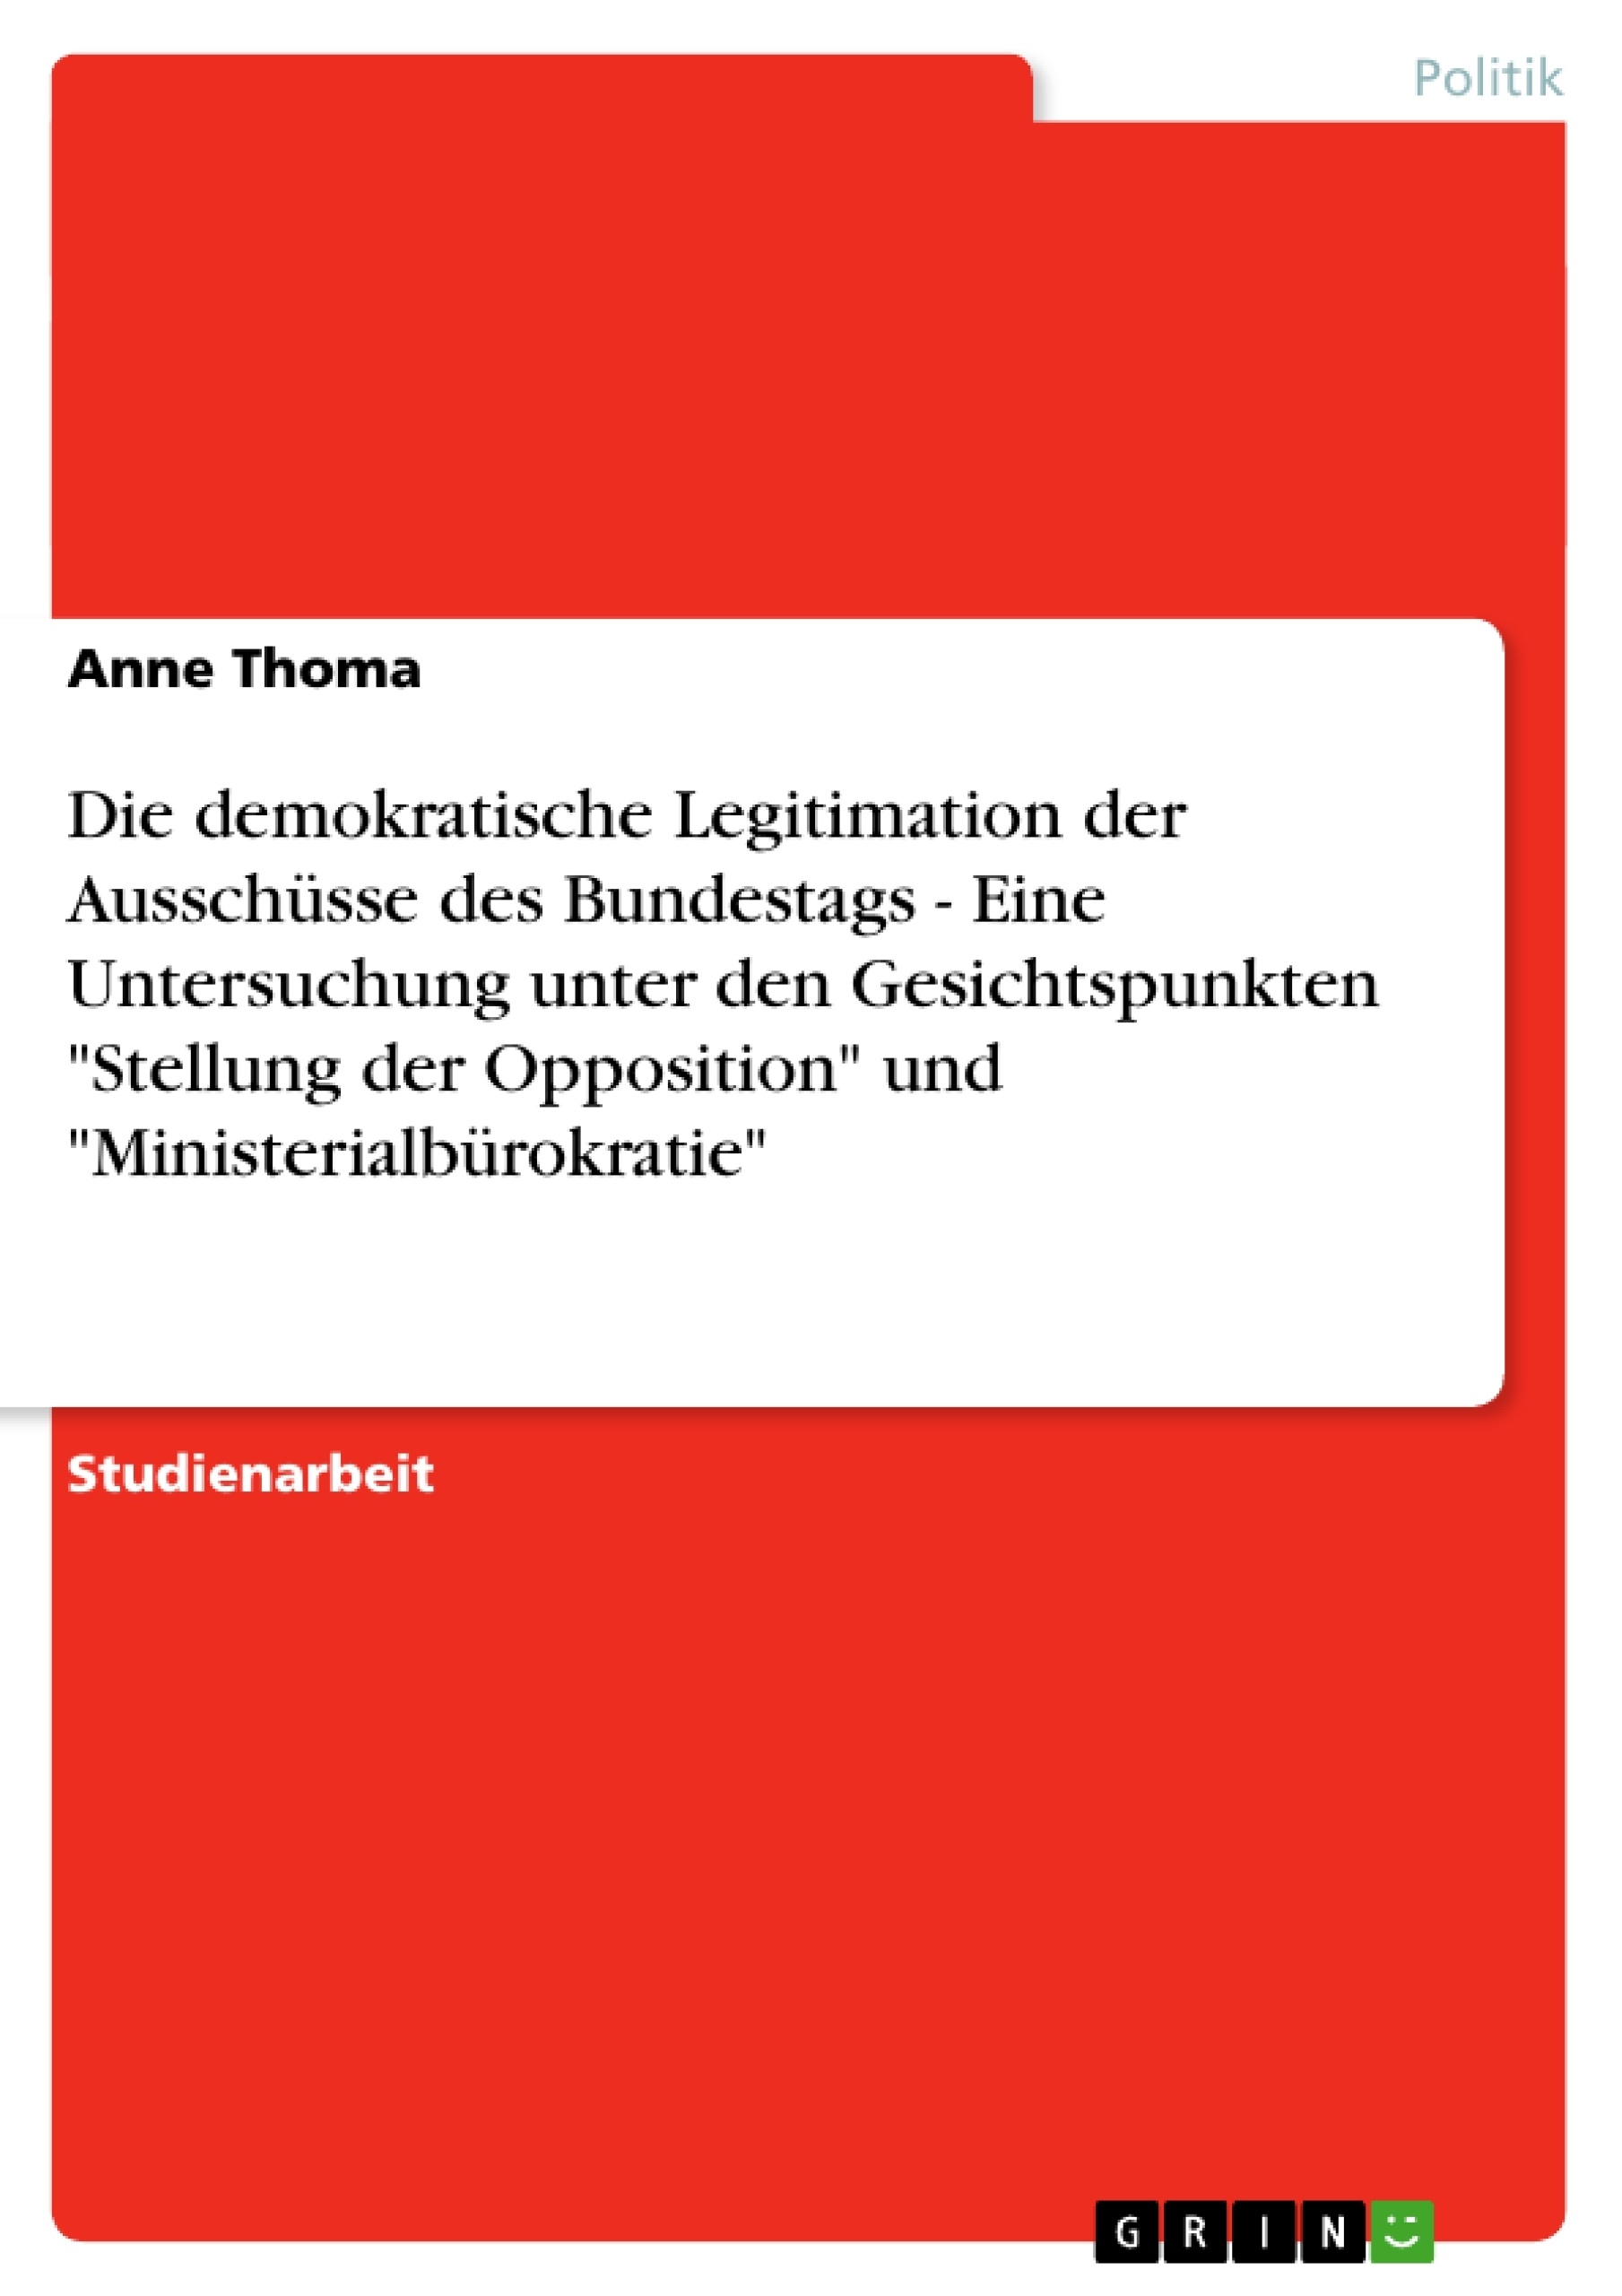 Título: Die demokratische Legitimation der Ausschüsse des Bundestags - Eine Untersuchung unter den Gesichtspunkten "Stellung der Opposition" und "Ministerialbürokratie"